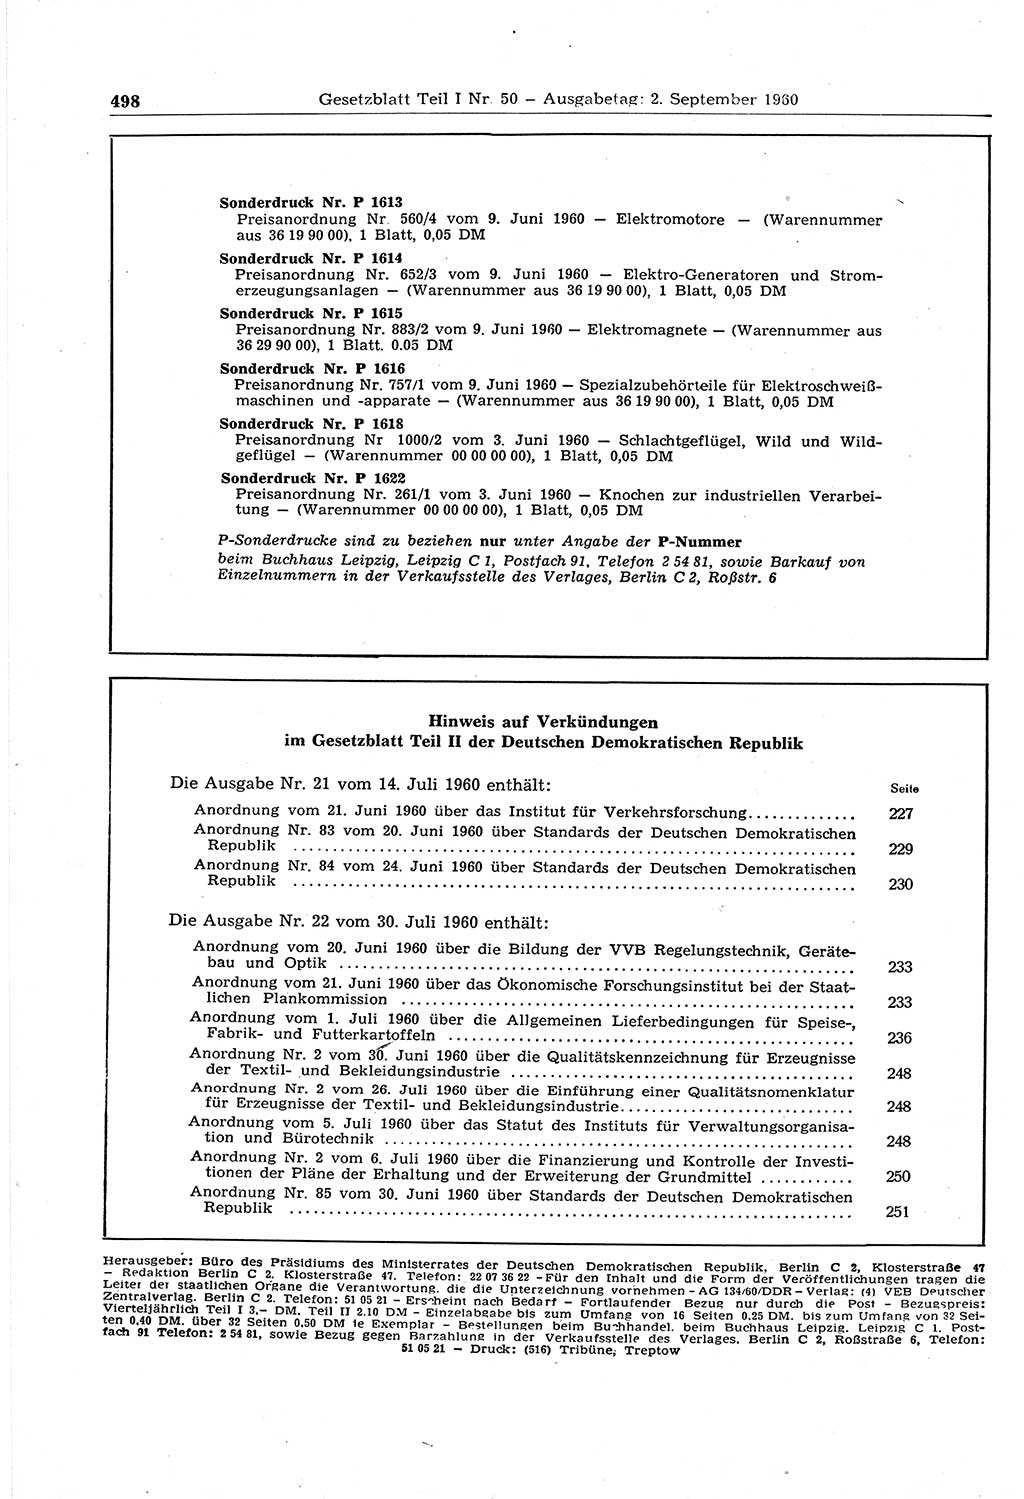 Gesetzblatt (GBl.) der Deutschen Demokratischen Republik (DDR) Teil Ⅰ 1960, Seite 498 (GBl. DDR Ⅰ 1960, S. 498)